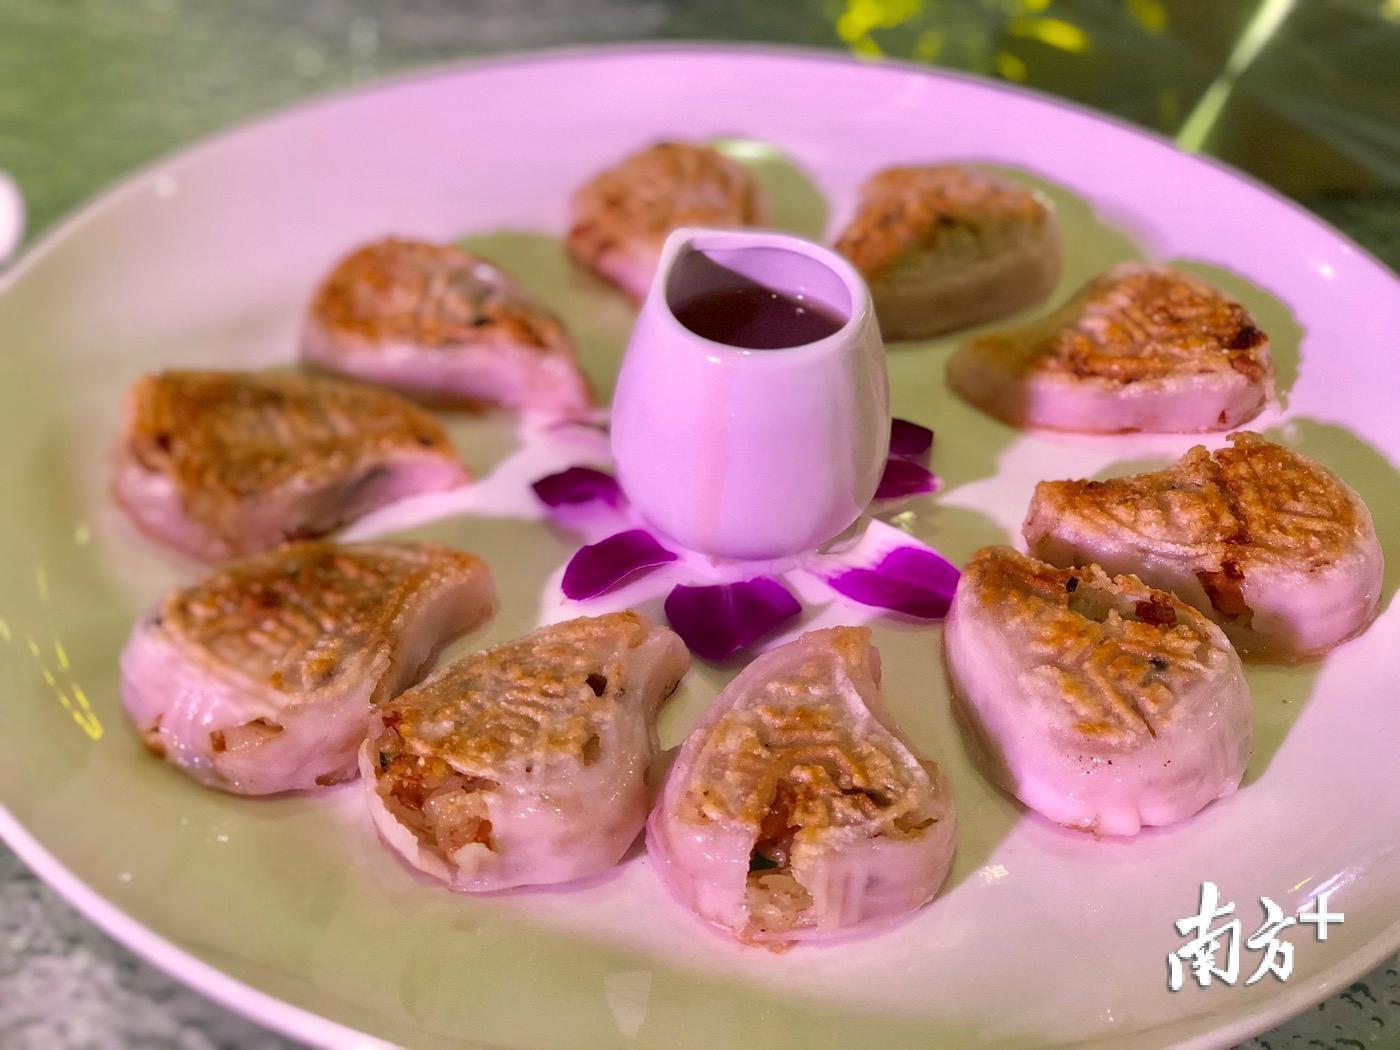 潮汕美食荟菜品之一:香煎红桃粿